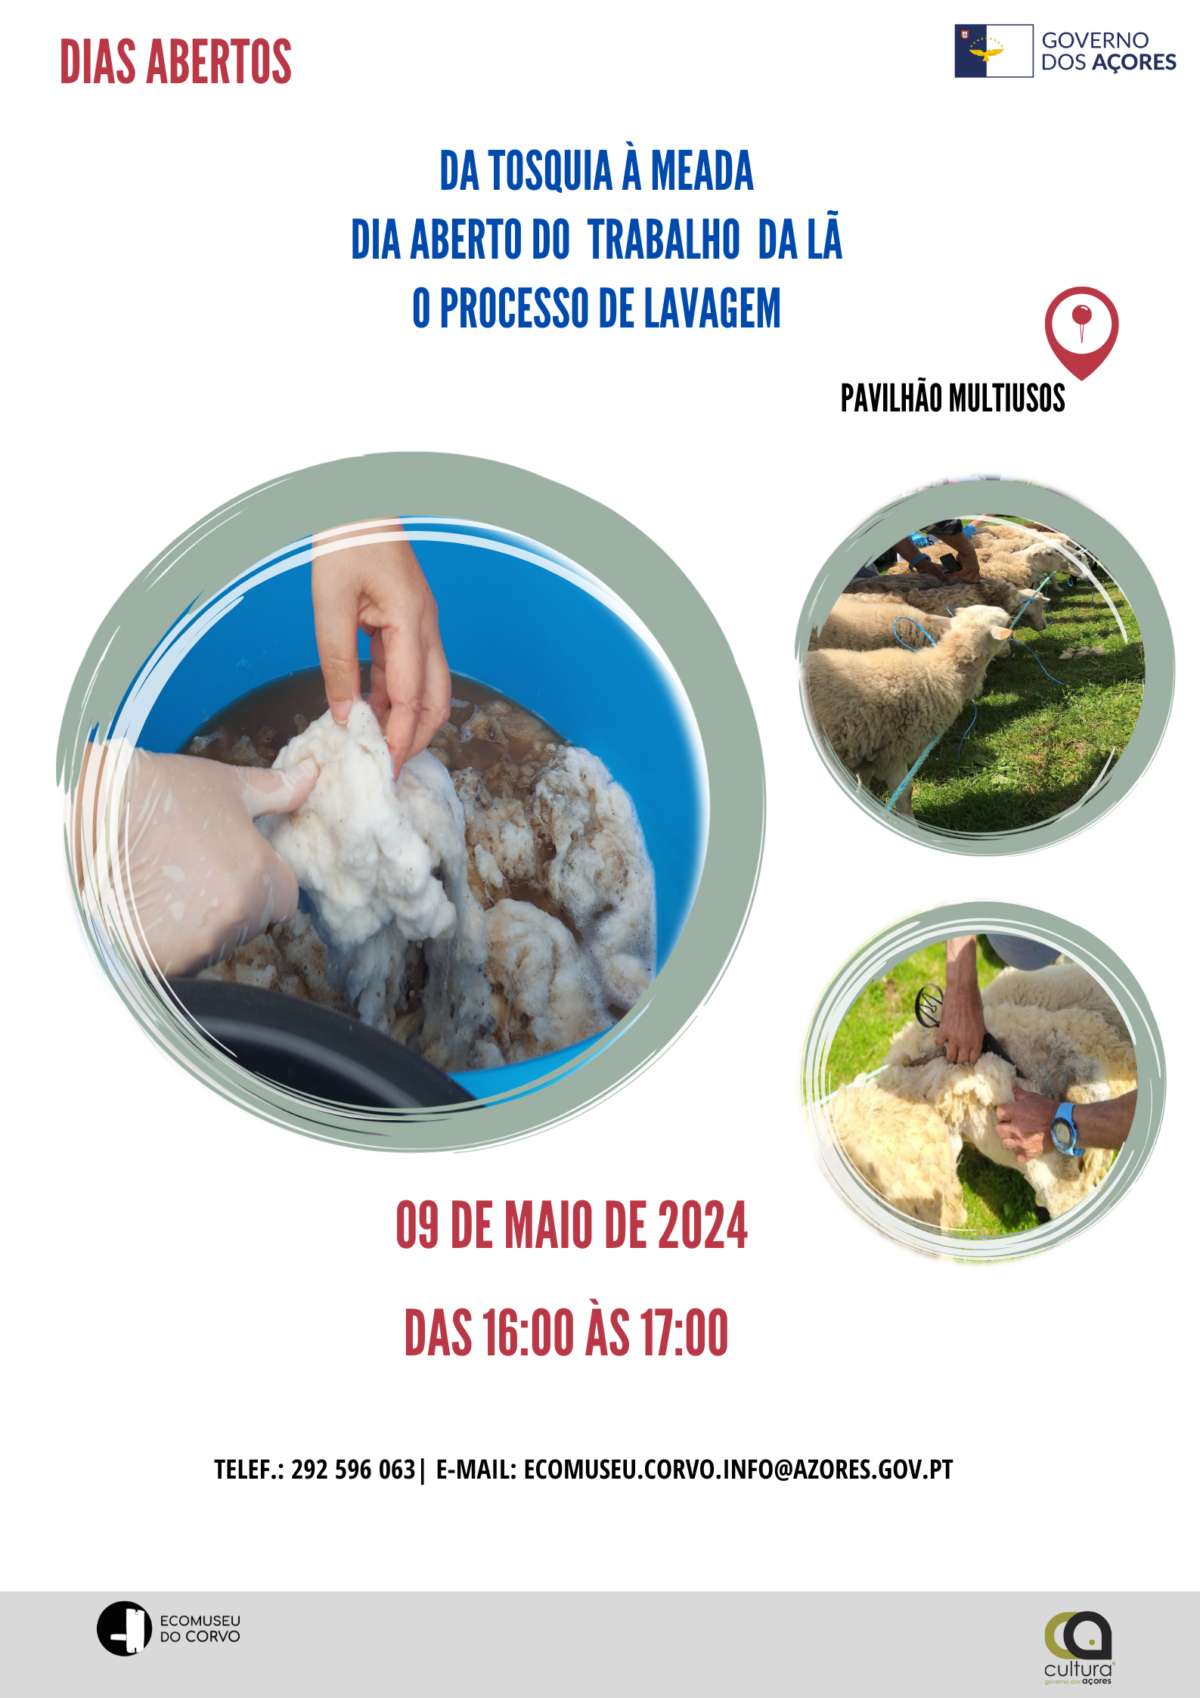 Dia Aberto do Trabalho da lã: o processo de lavagem's featured image